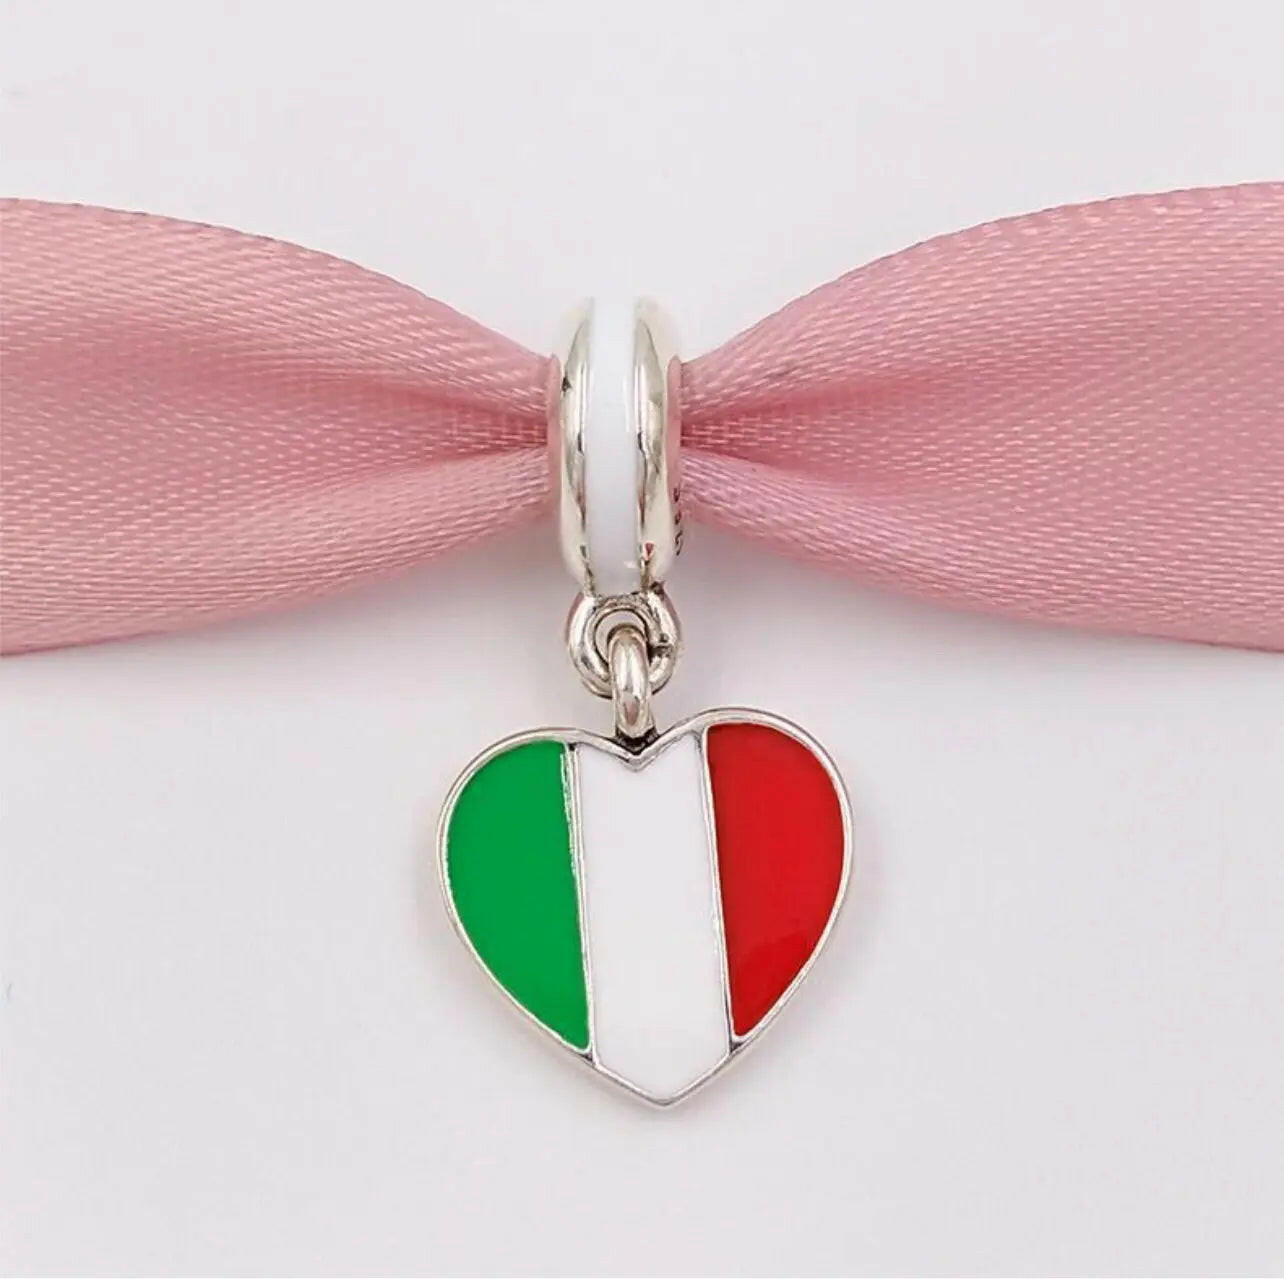 925 Silver Italian Heart Charm ItalianandmoreCo